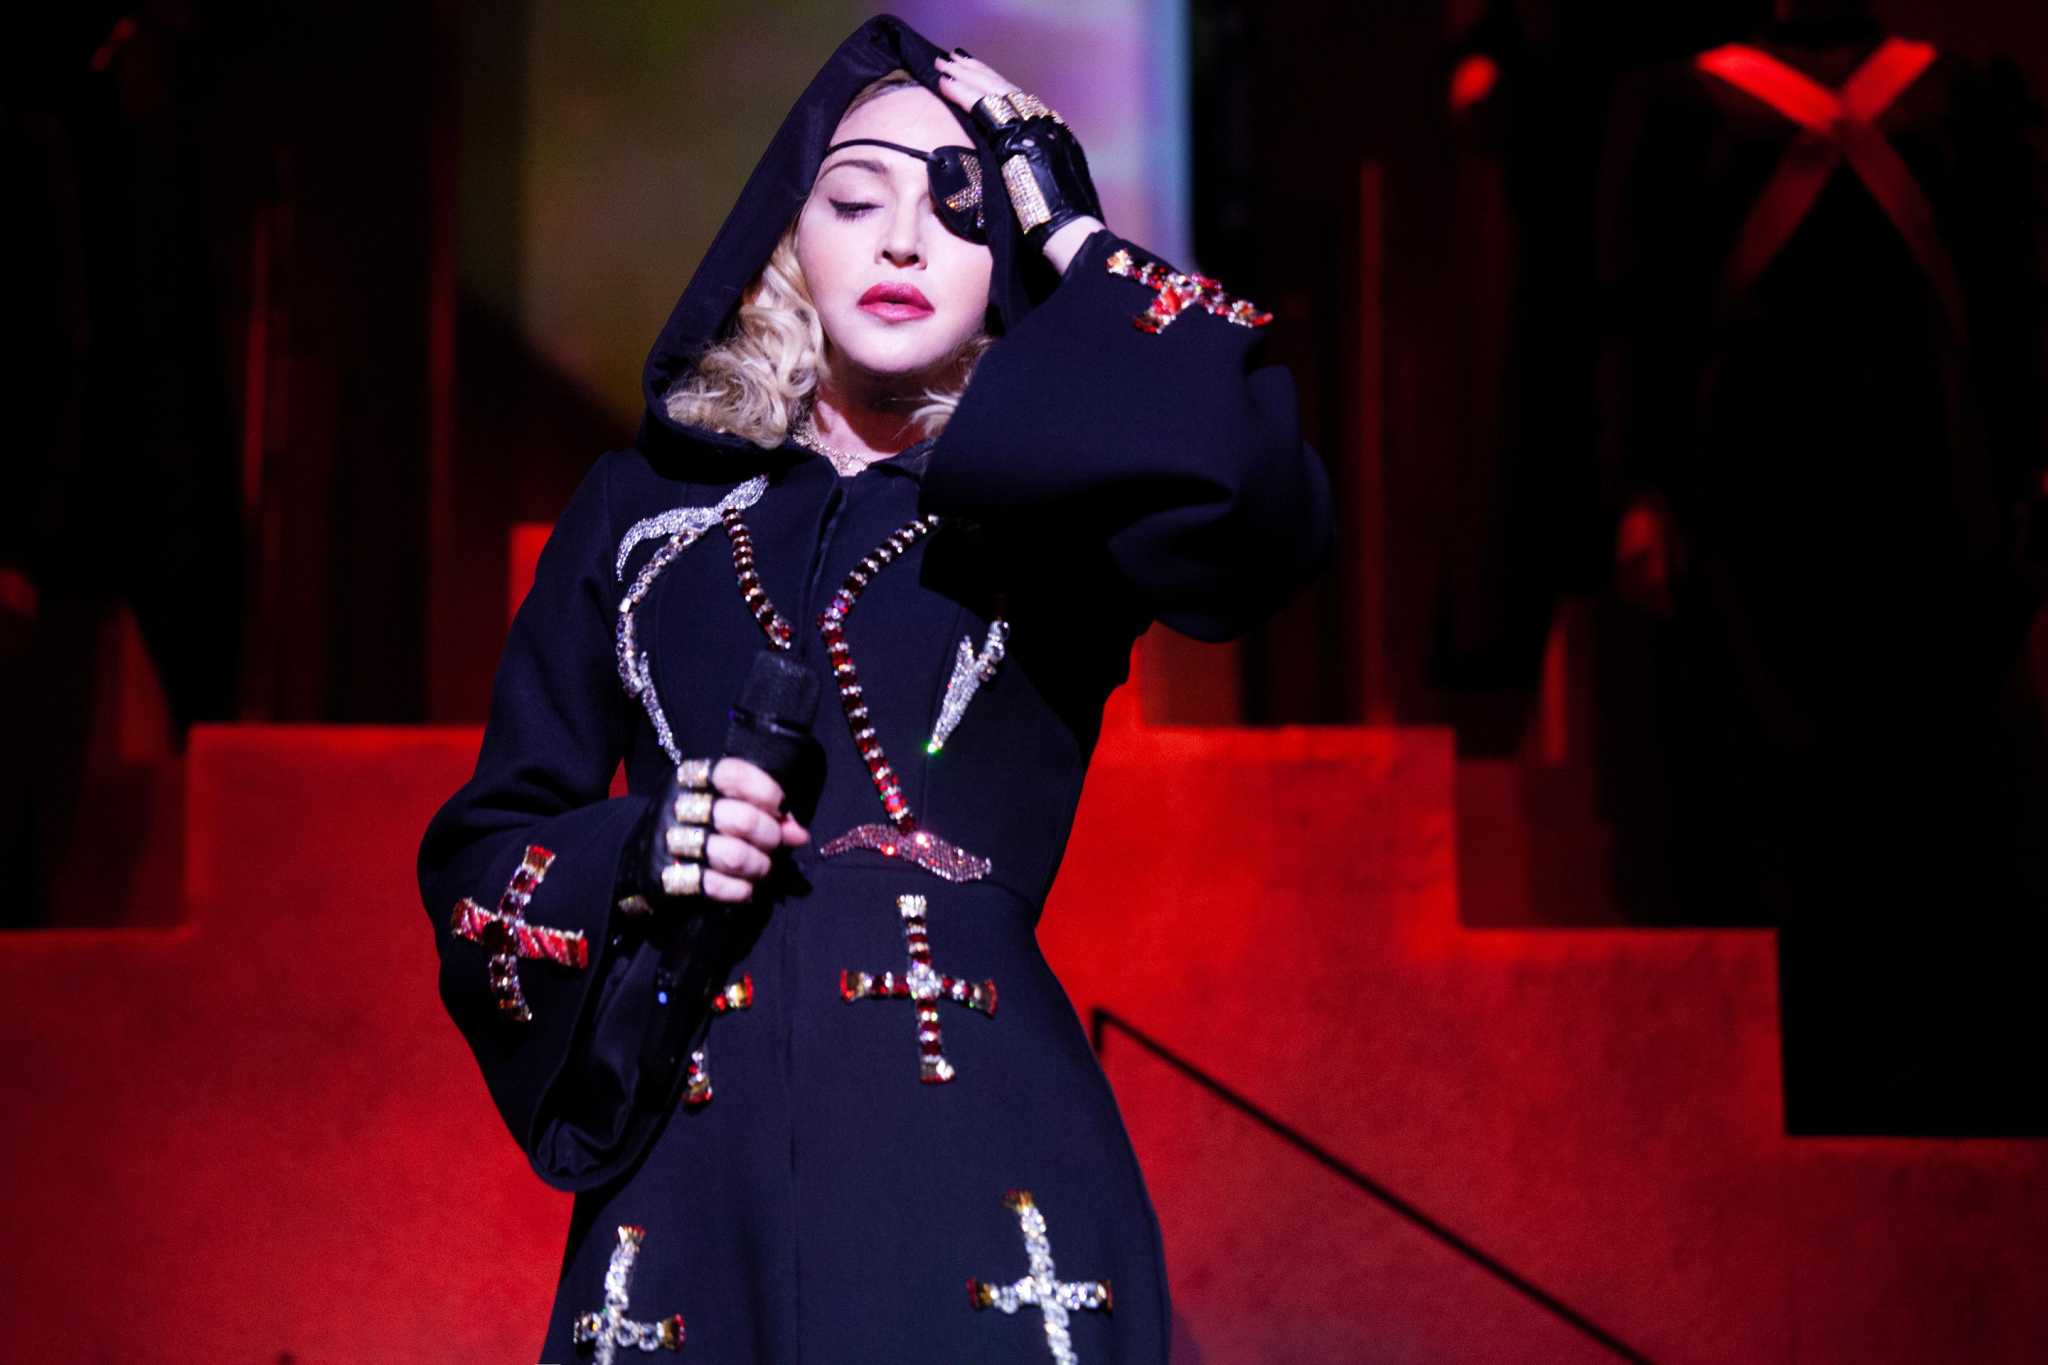 Madonna postpones Celebration Tour, including Houston, after ICU stay